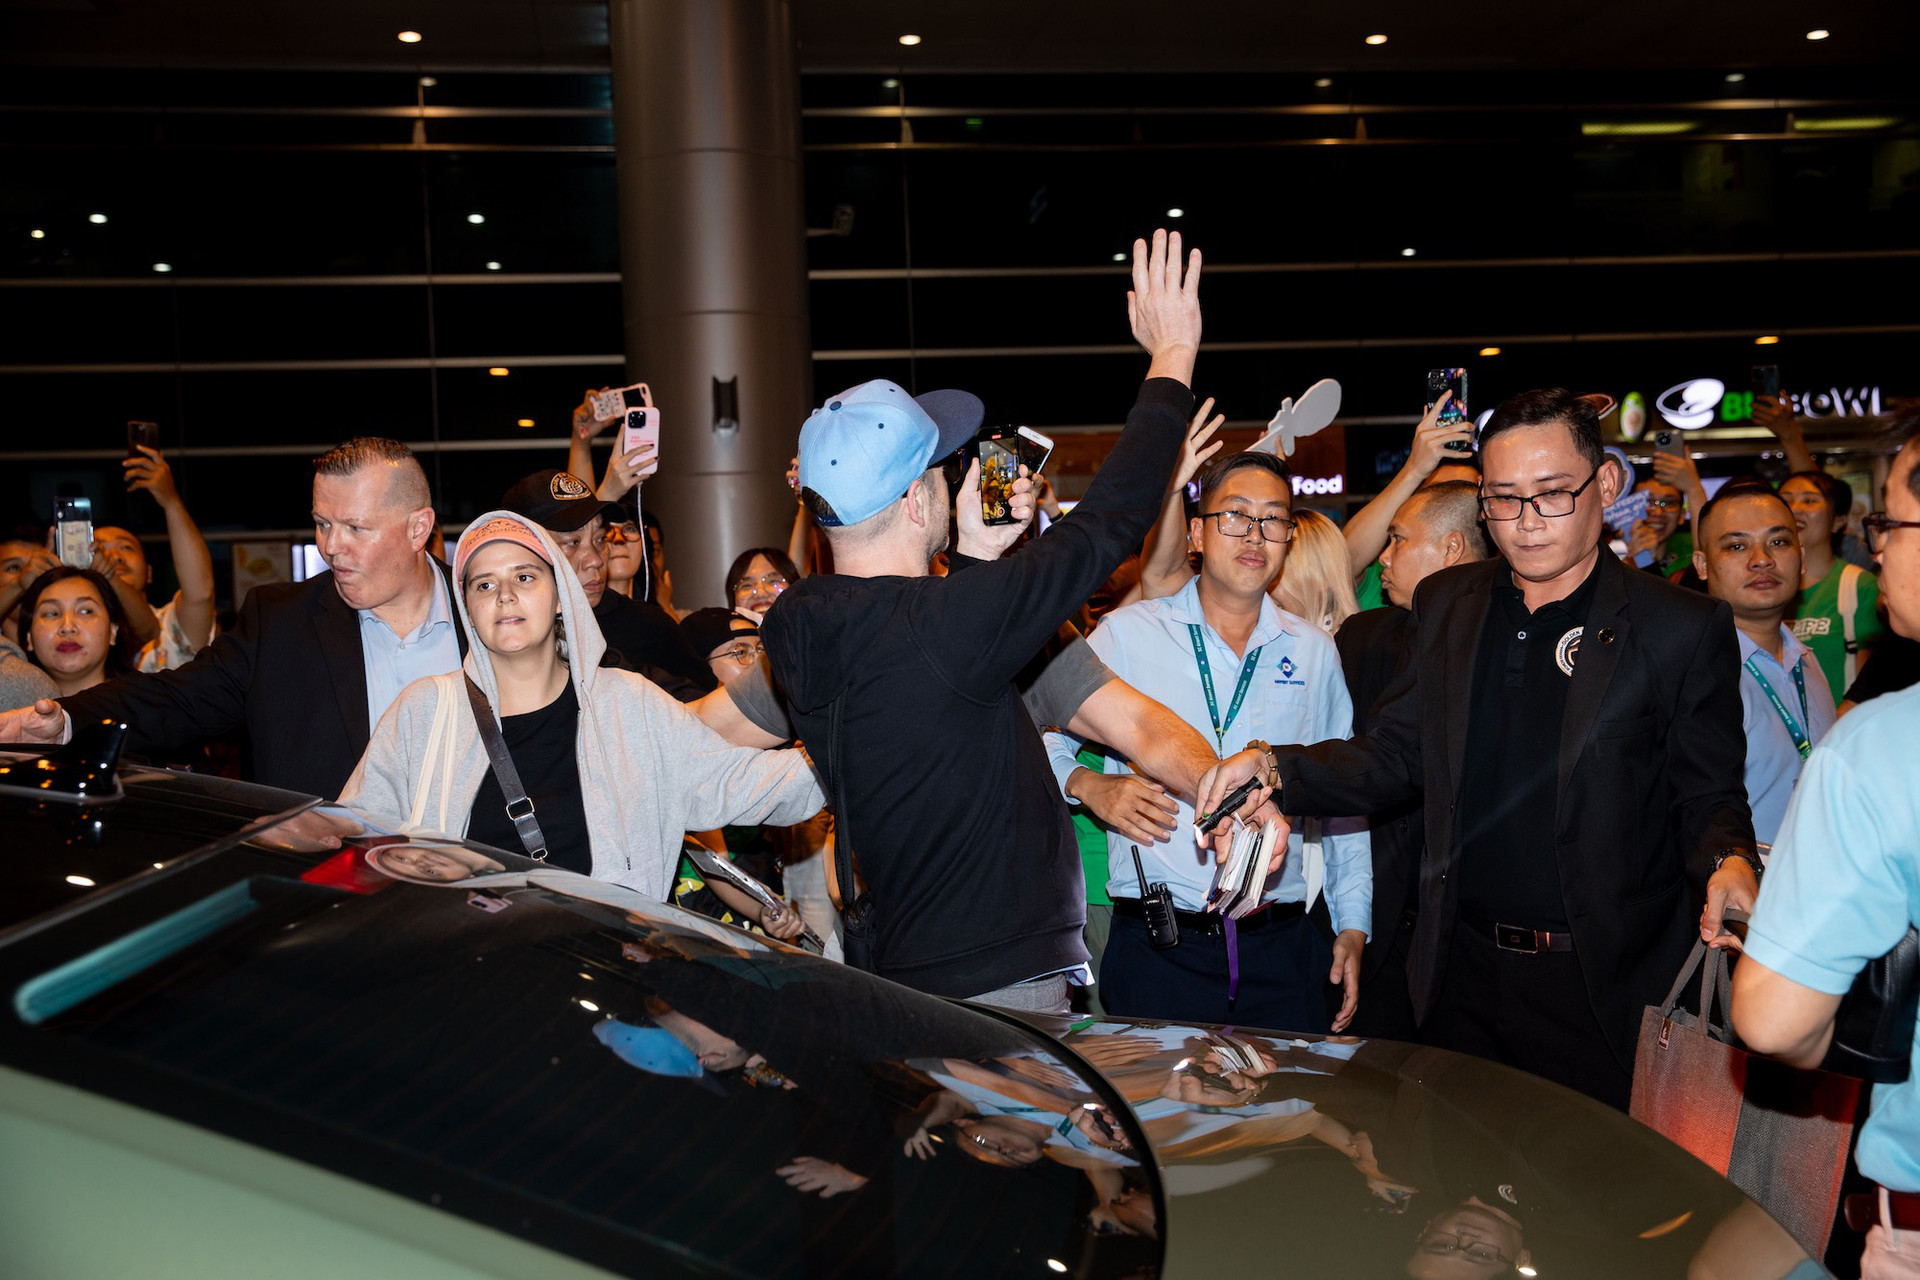 Westlife nán lại vẫy tay chào khán giả trước khi bước vào xe - Ảnh: BTC